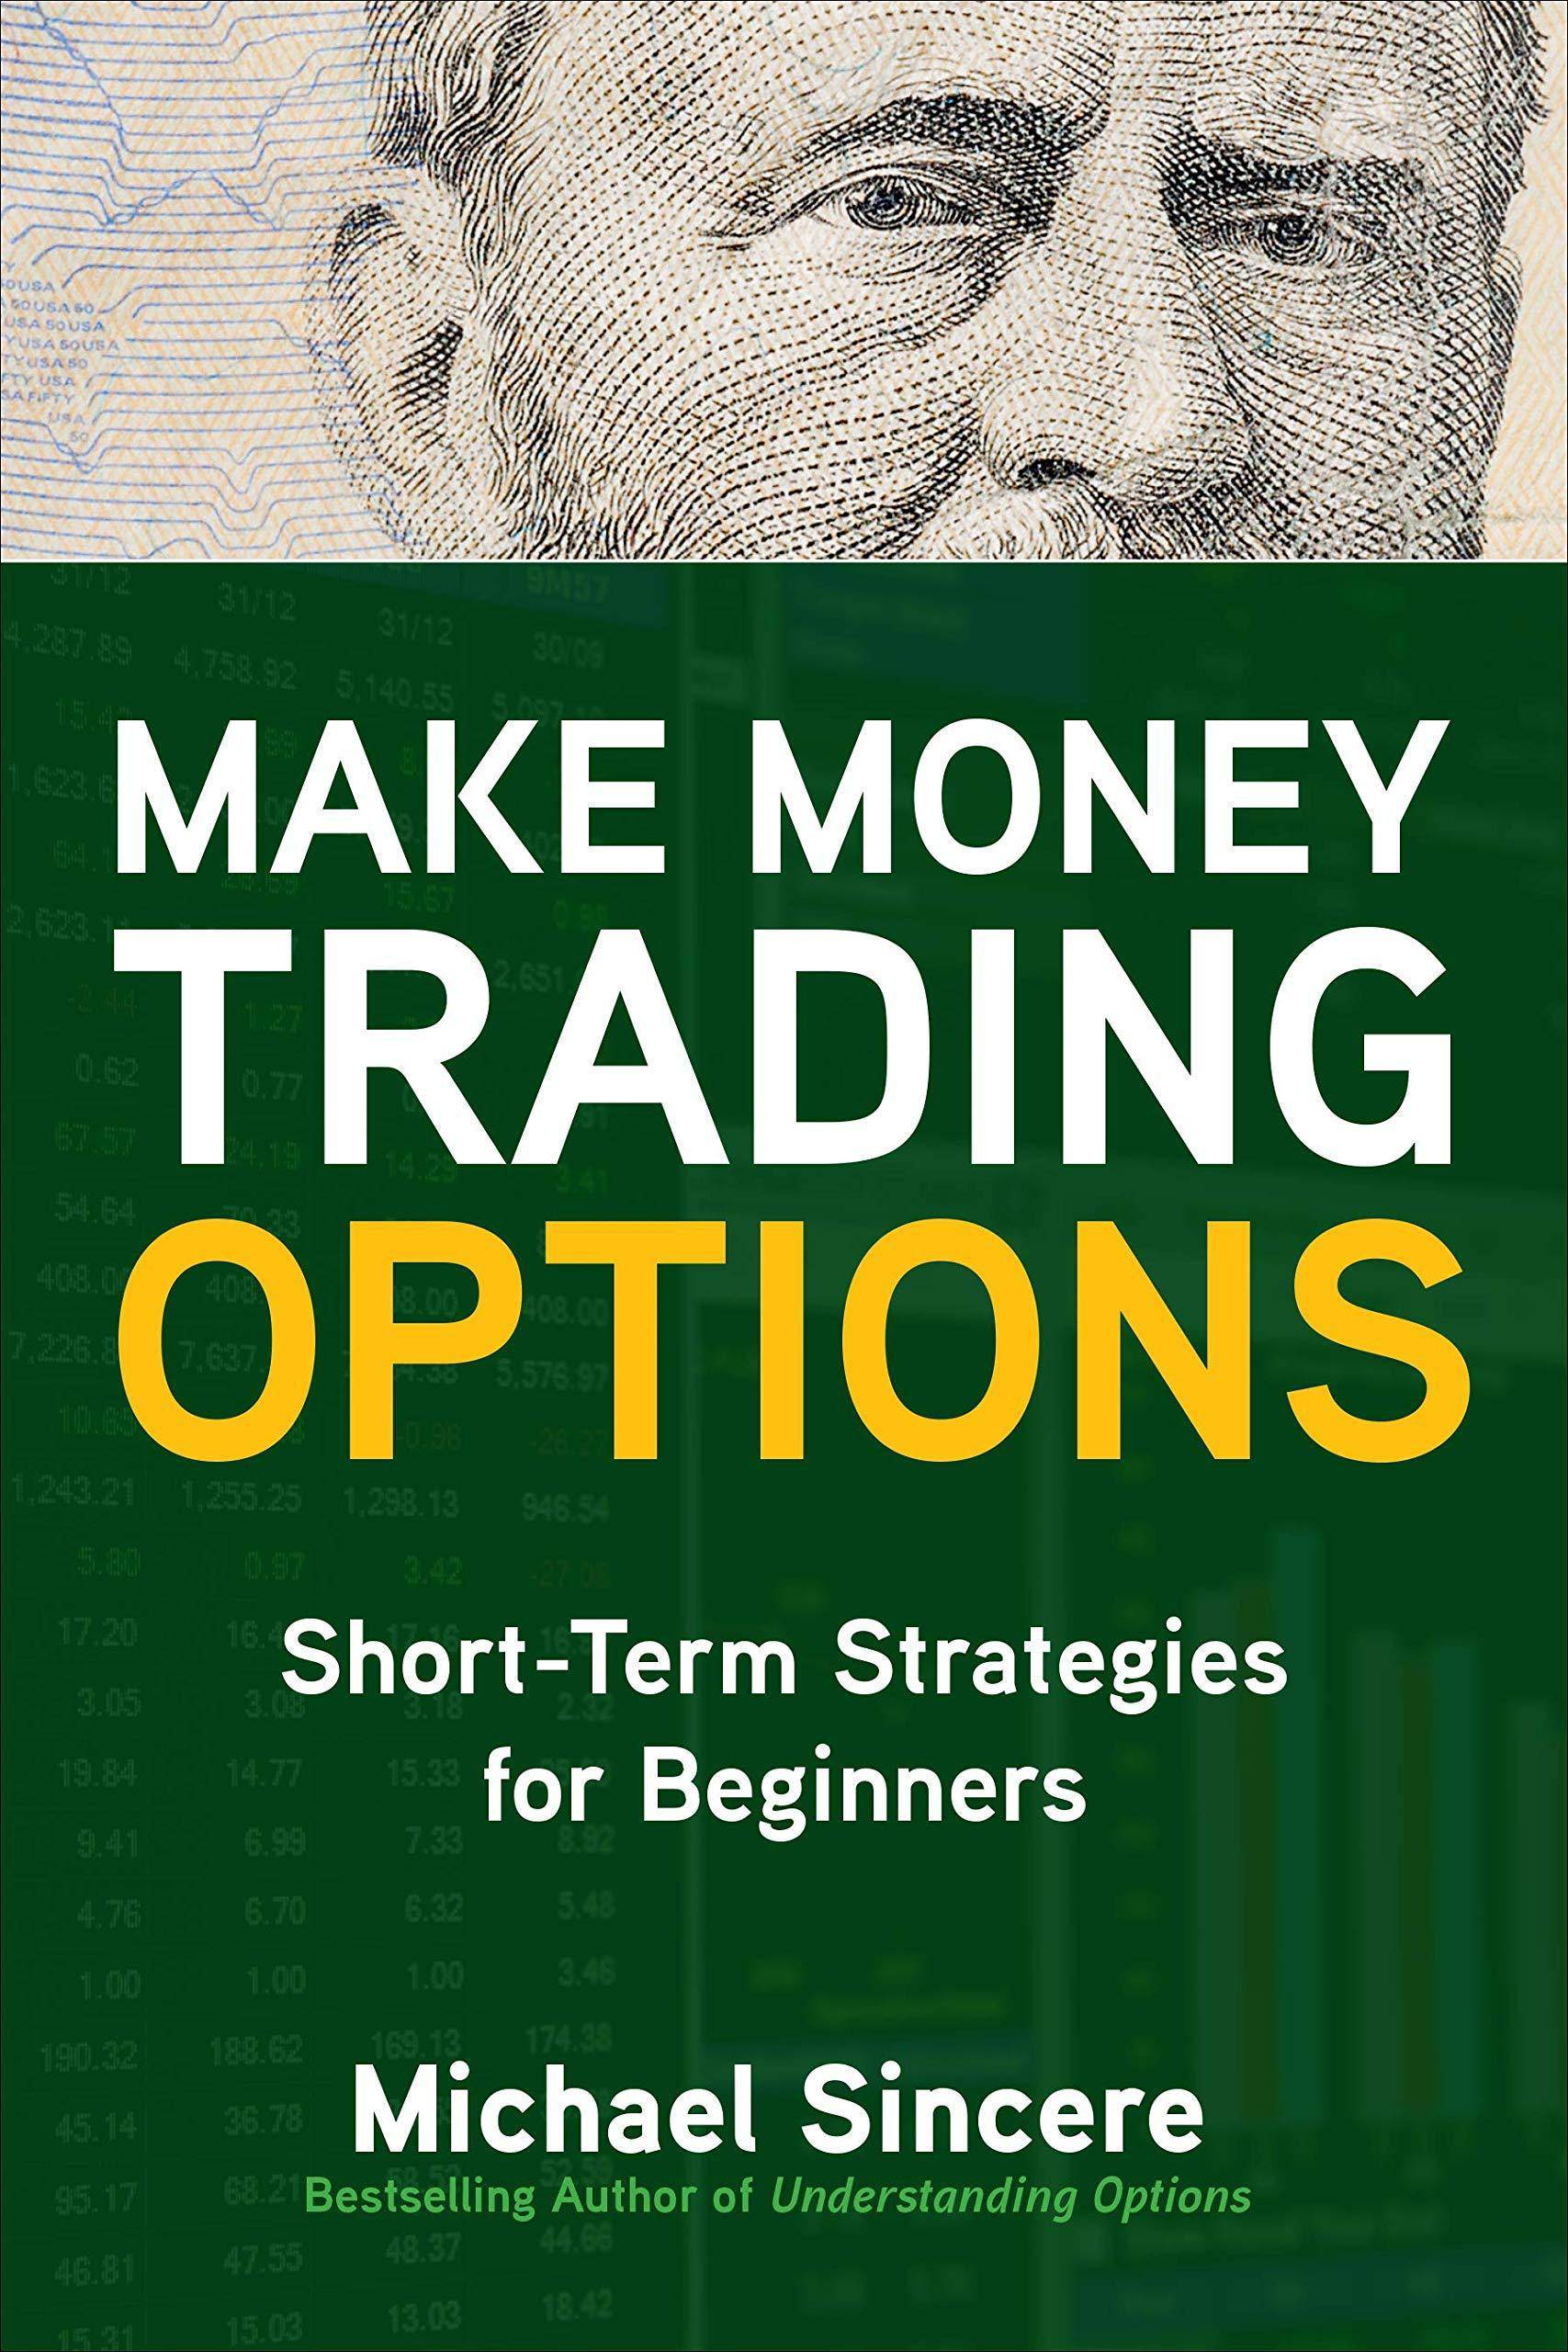 Make Money Trading Options - SureShot Books Publishing LLC